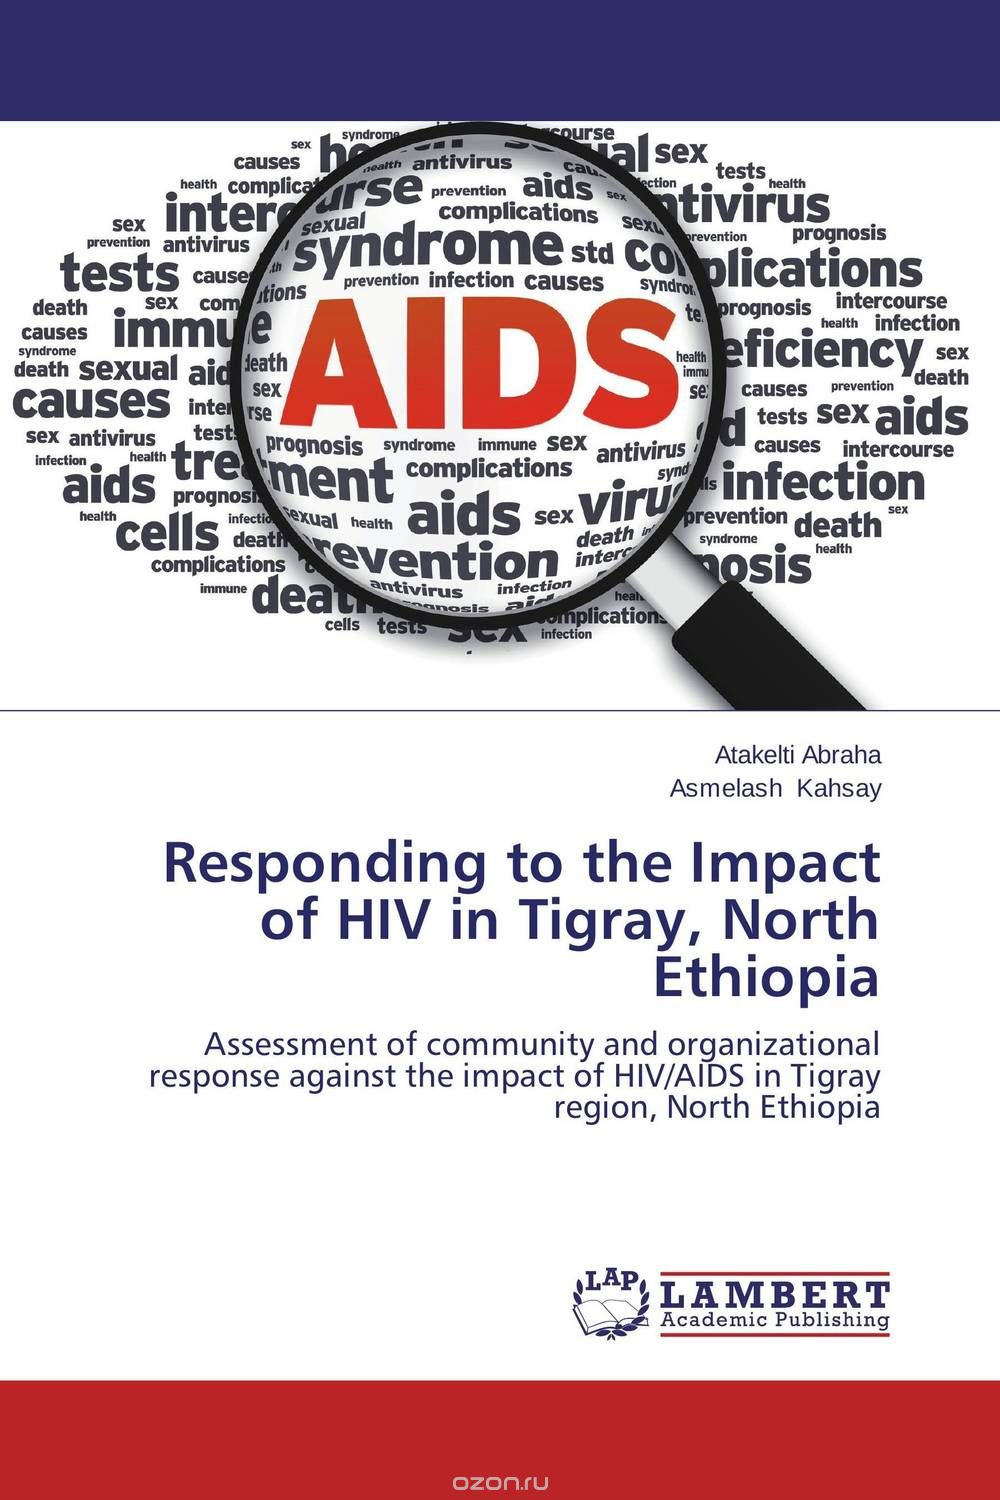 Скачать книгу "Responding to the Impact of HIV in Tigray, North Ethiopia"